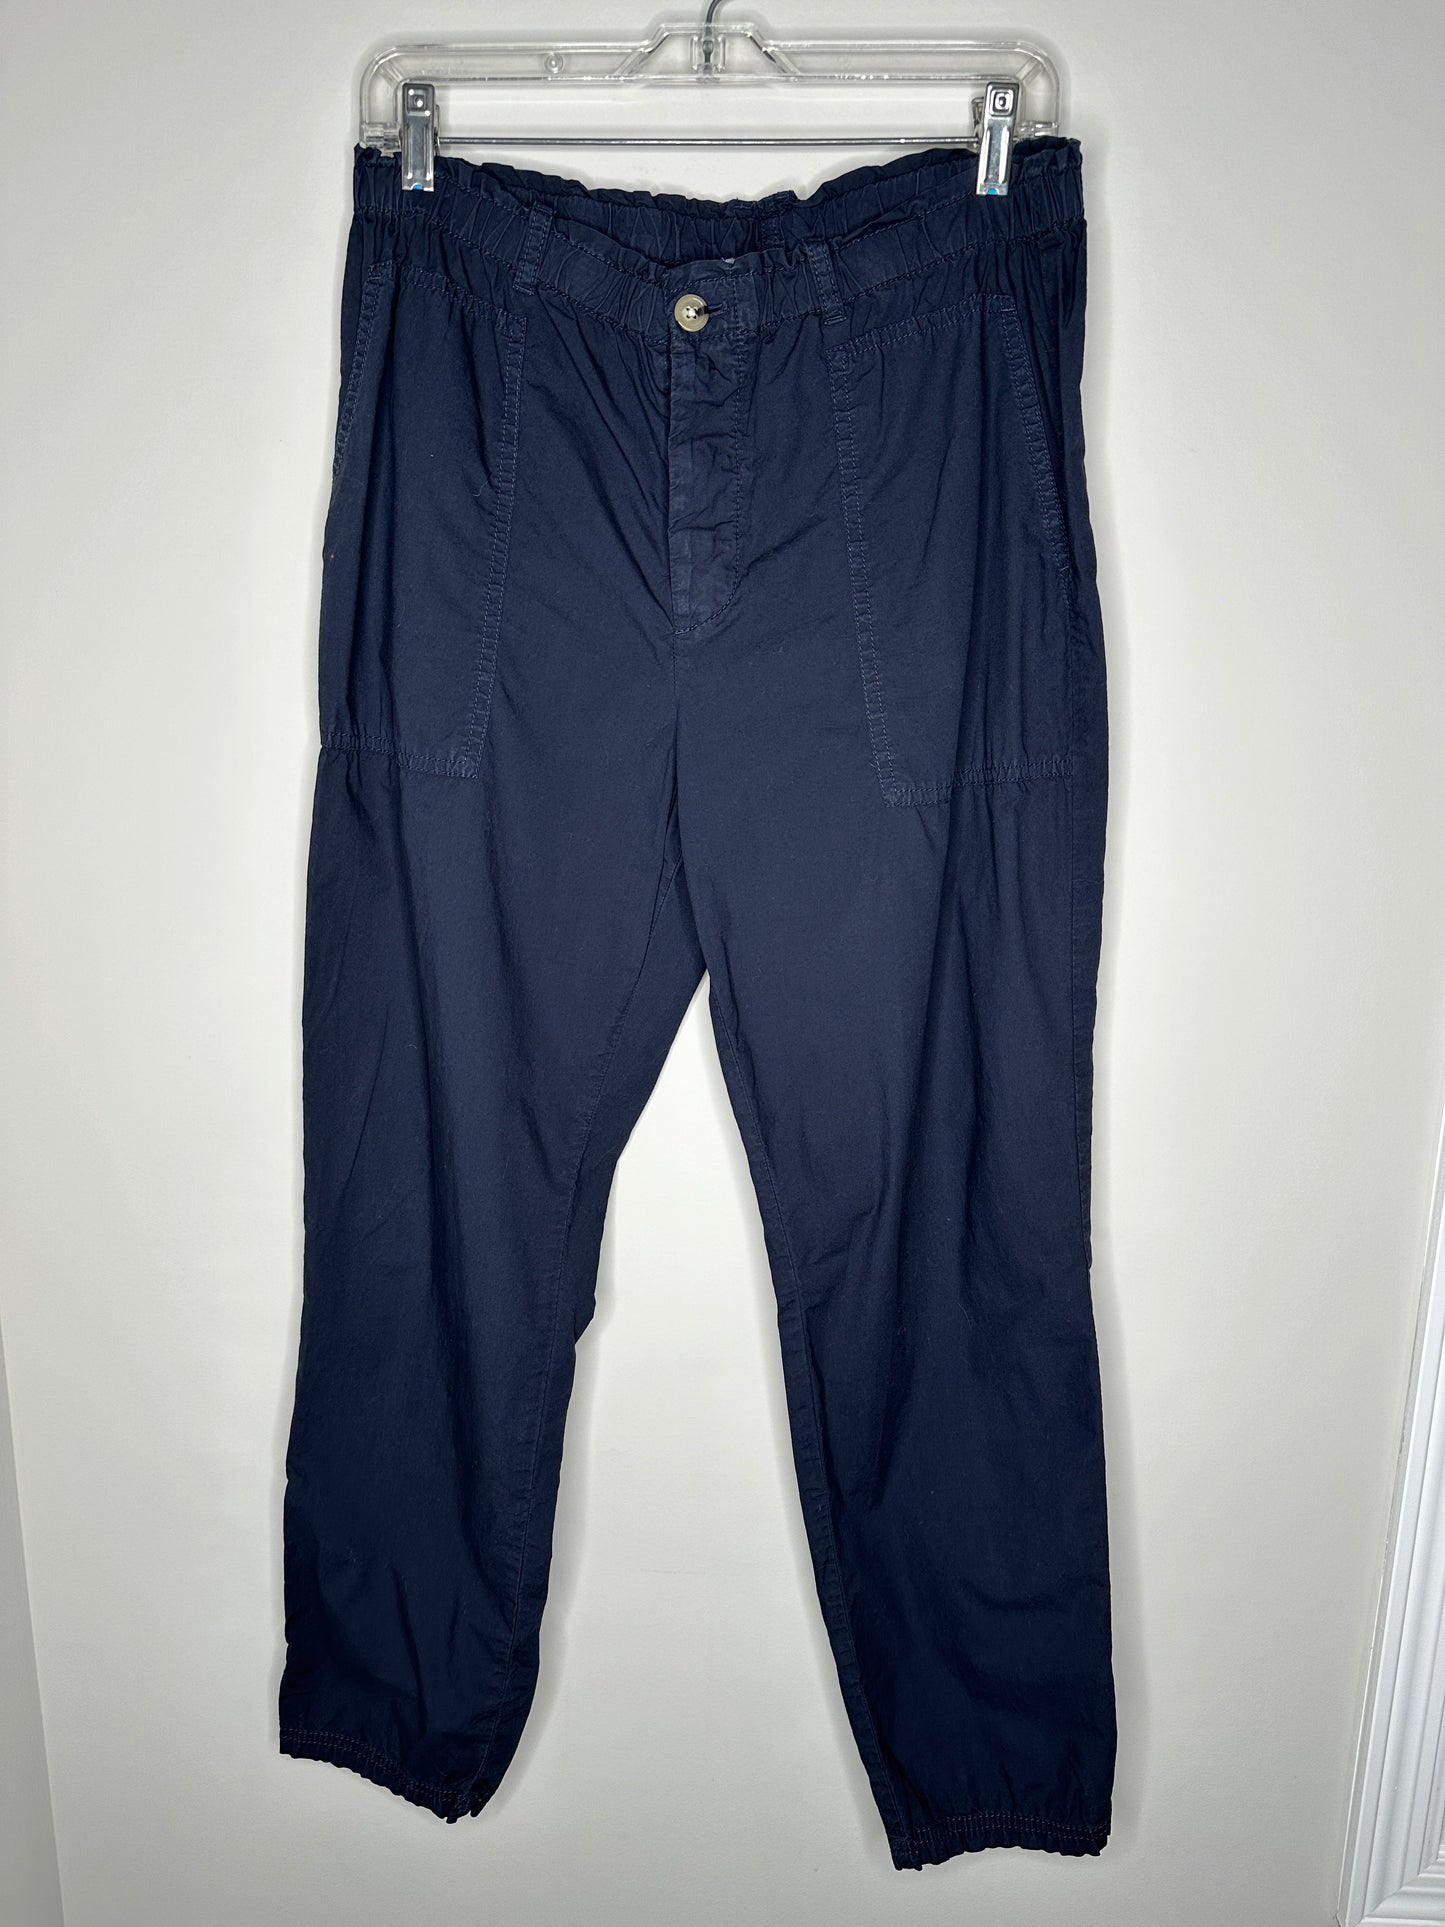 Lou & Grey Size M Navy Blue Cotton Elastic Waist Pants